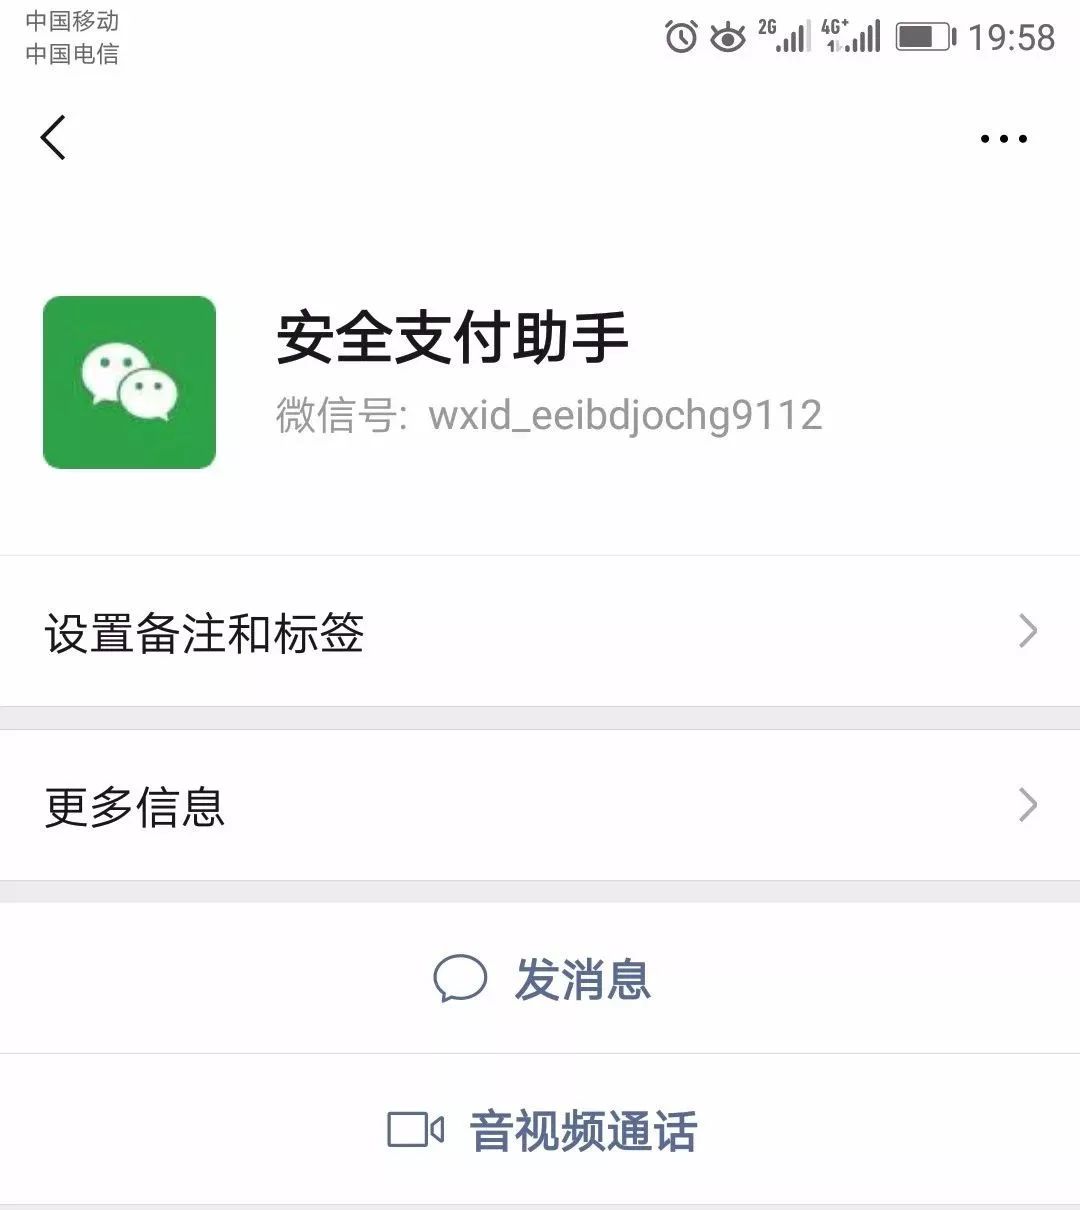 腾讯客服-微信安全中心新版上线